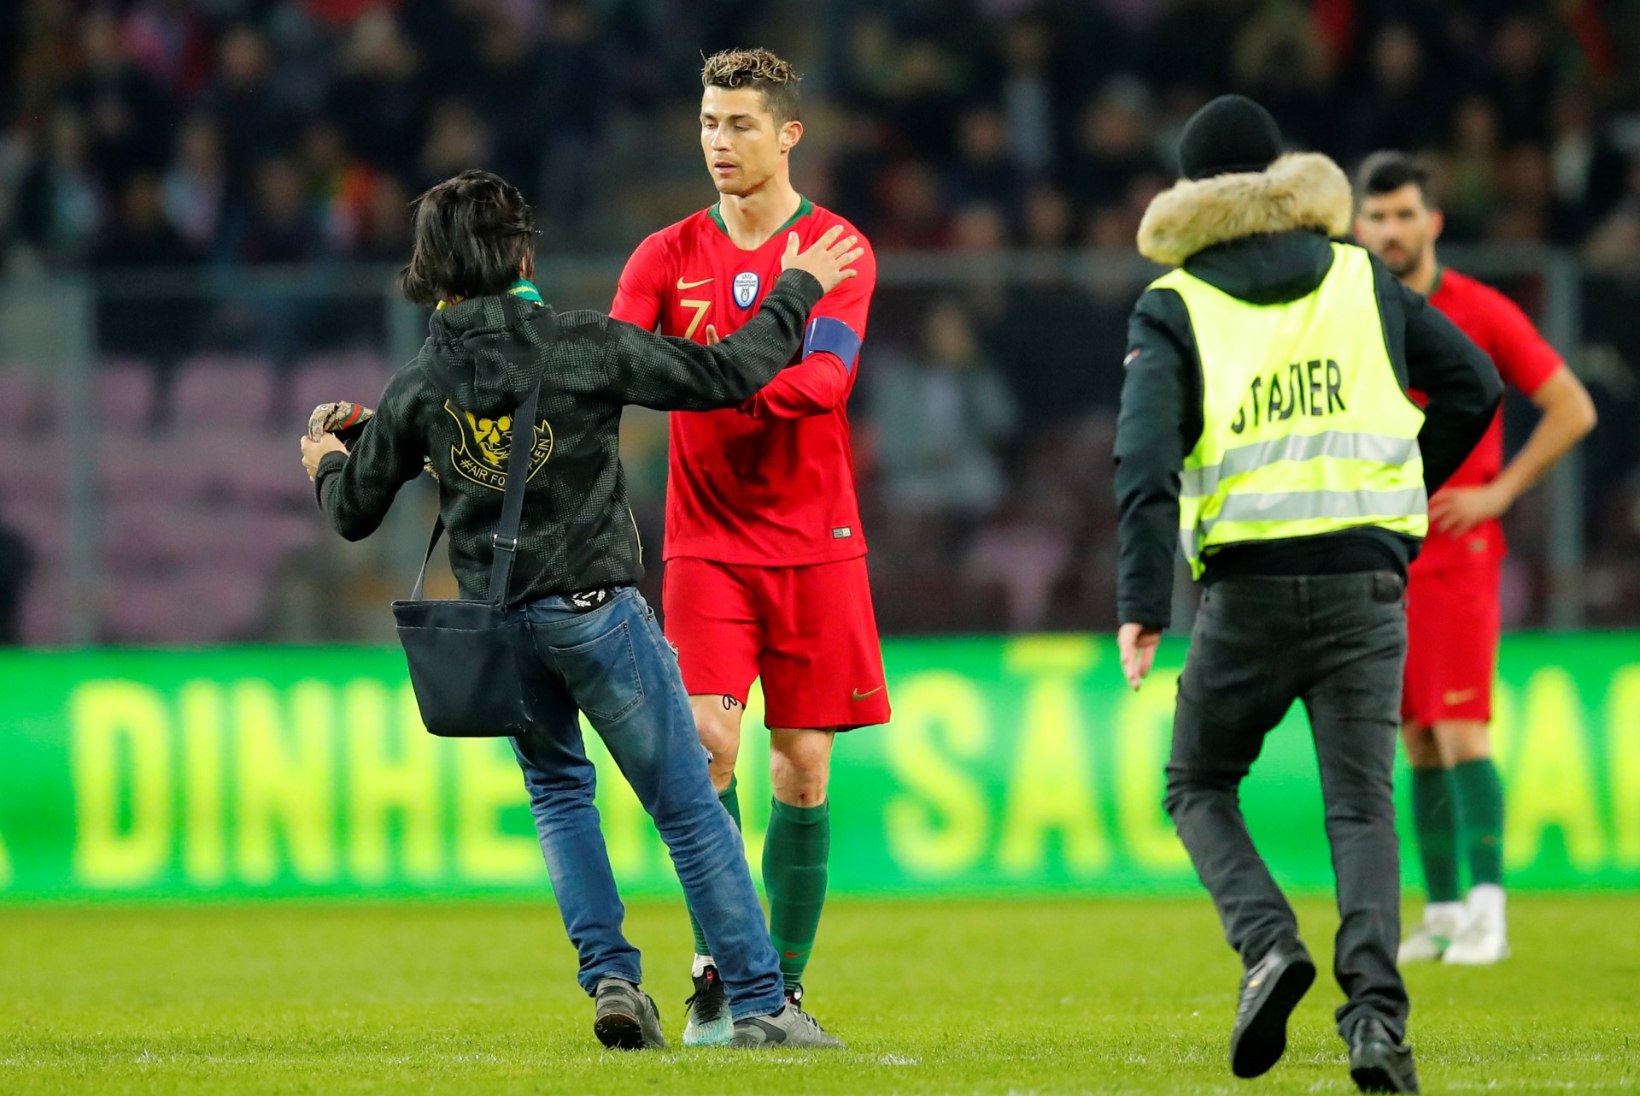 FOTOD | Platsile tormanud fänn üritas Ronaldot suudelda, Portugal sai Hollandilt kolaka